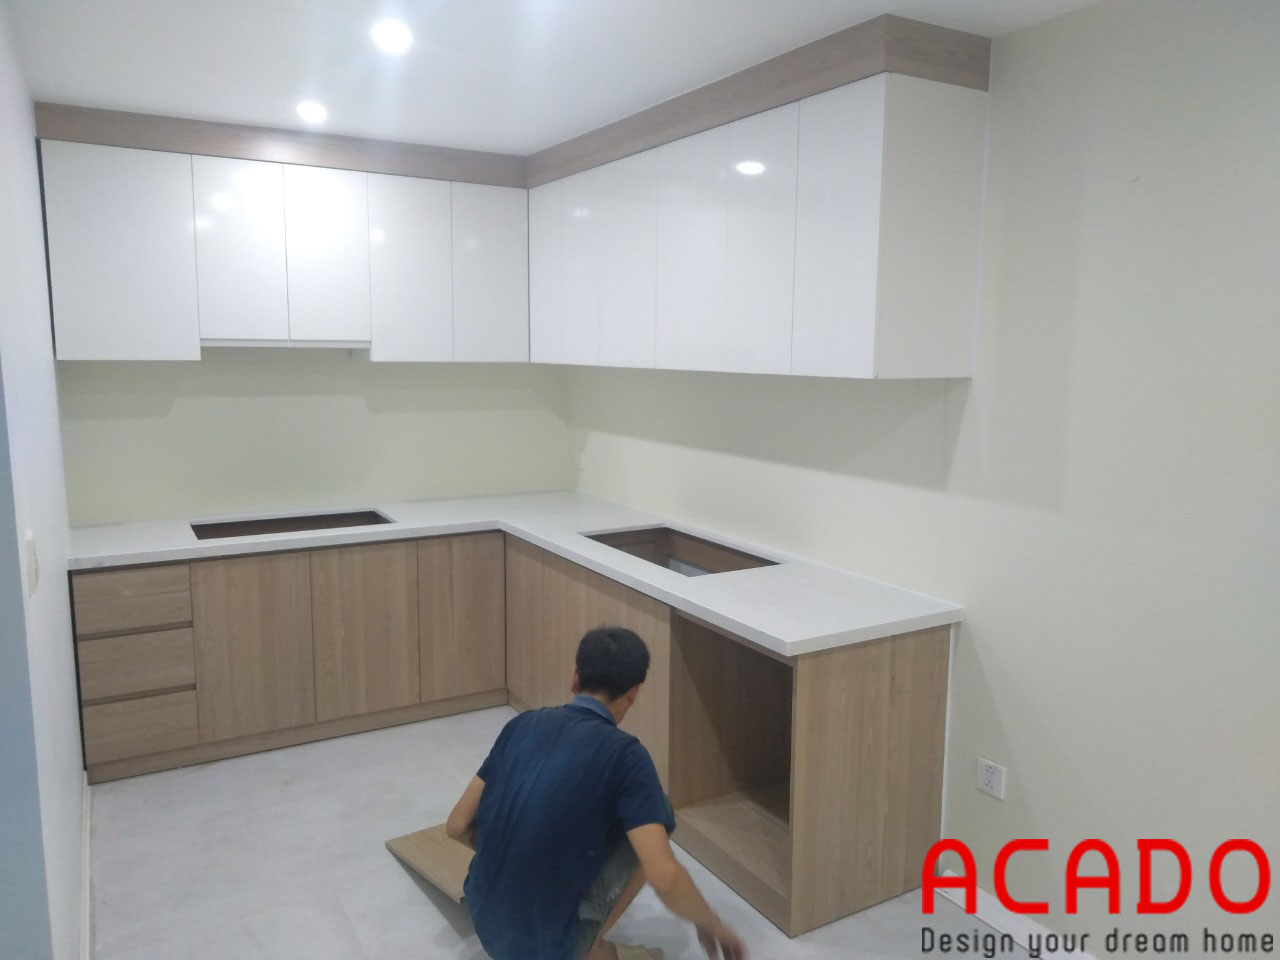 Thợ thi công ACADO đang thi công lắp đặt tủ bếp tại An Khánh